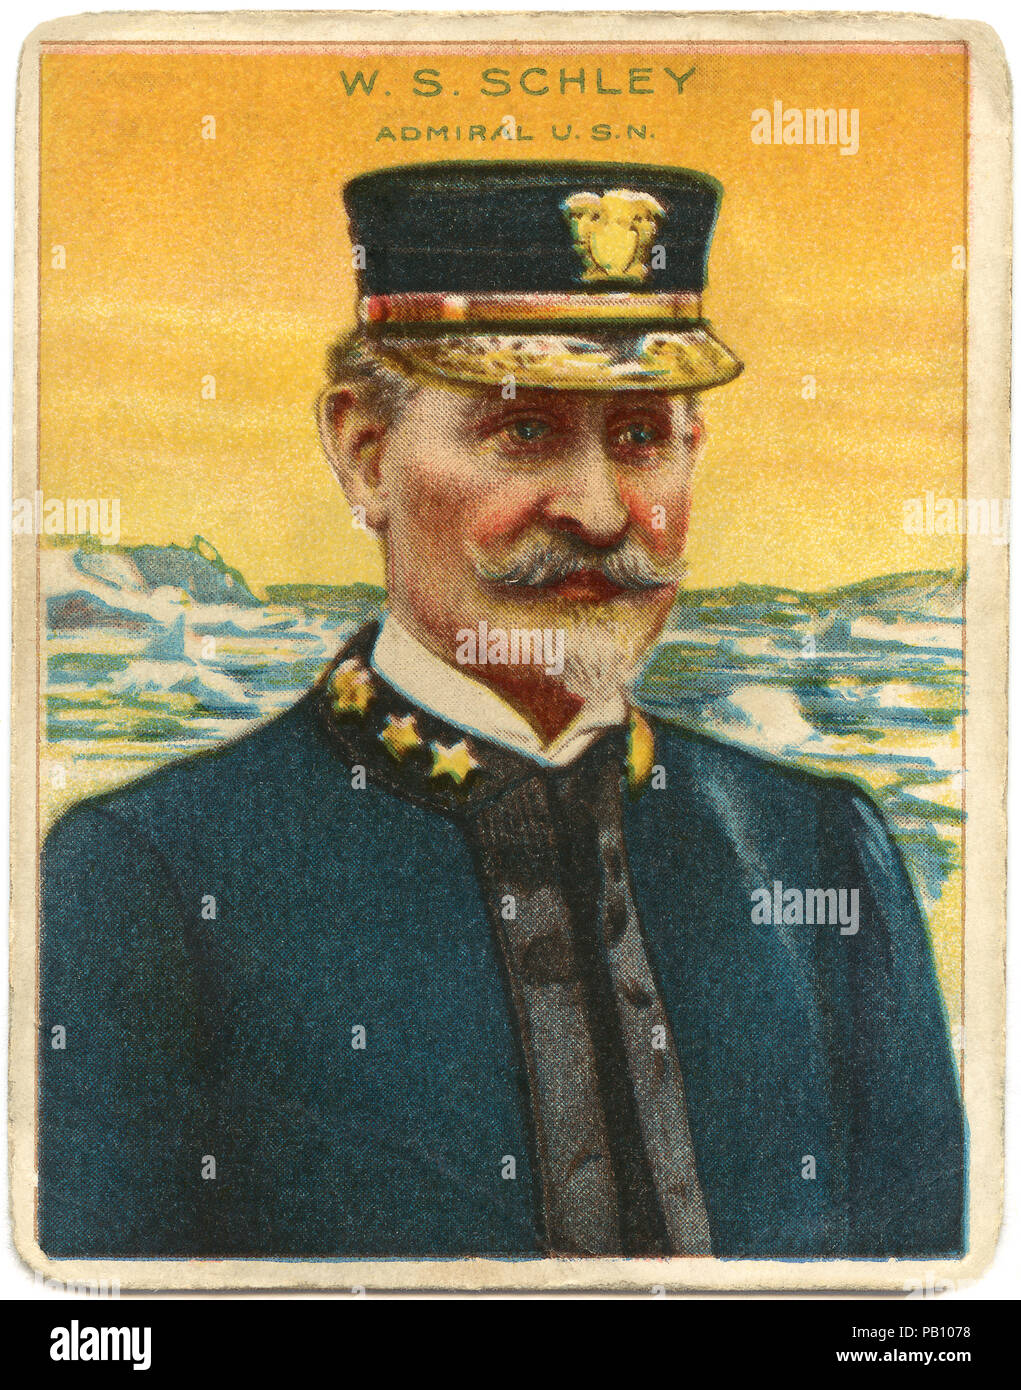 Winfield Scott Schley (1839-1911), ammiraglio posteriore negli Stati Uniti Navy, eroe della battaglia di Santiago de Cuba Spagnolo durante la guerra americana, Ritratto, 1898 Foto Stock